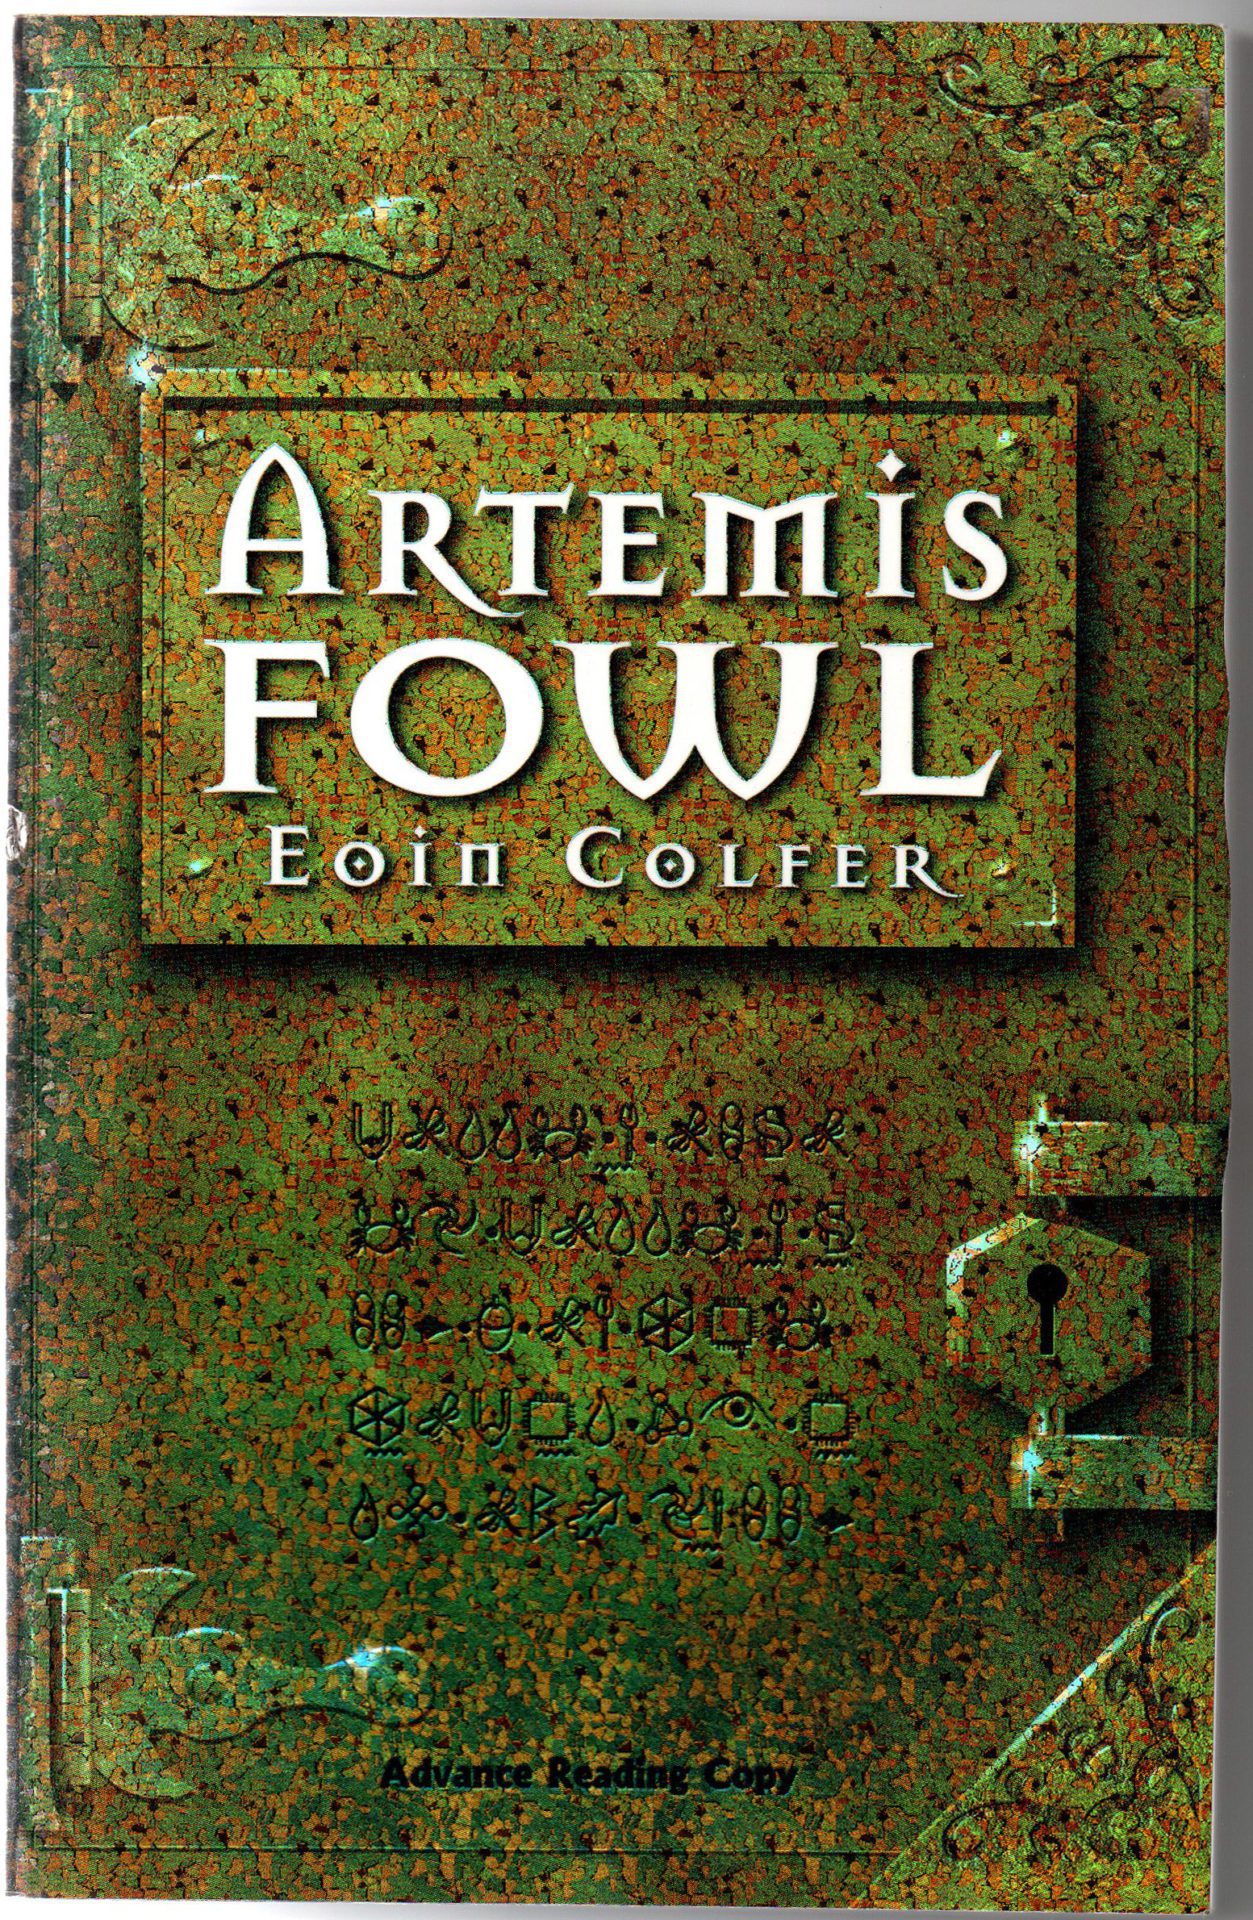  Artemis Fowl: o Código Eterno: 9788501068101: Eoin Colfer:  Libros